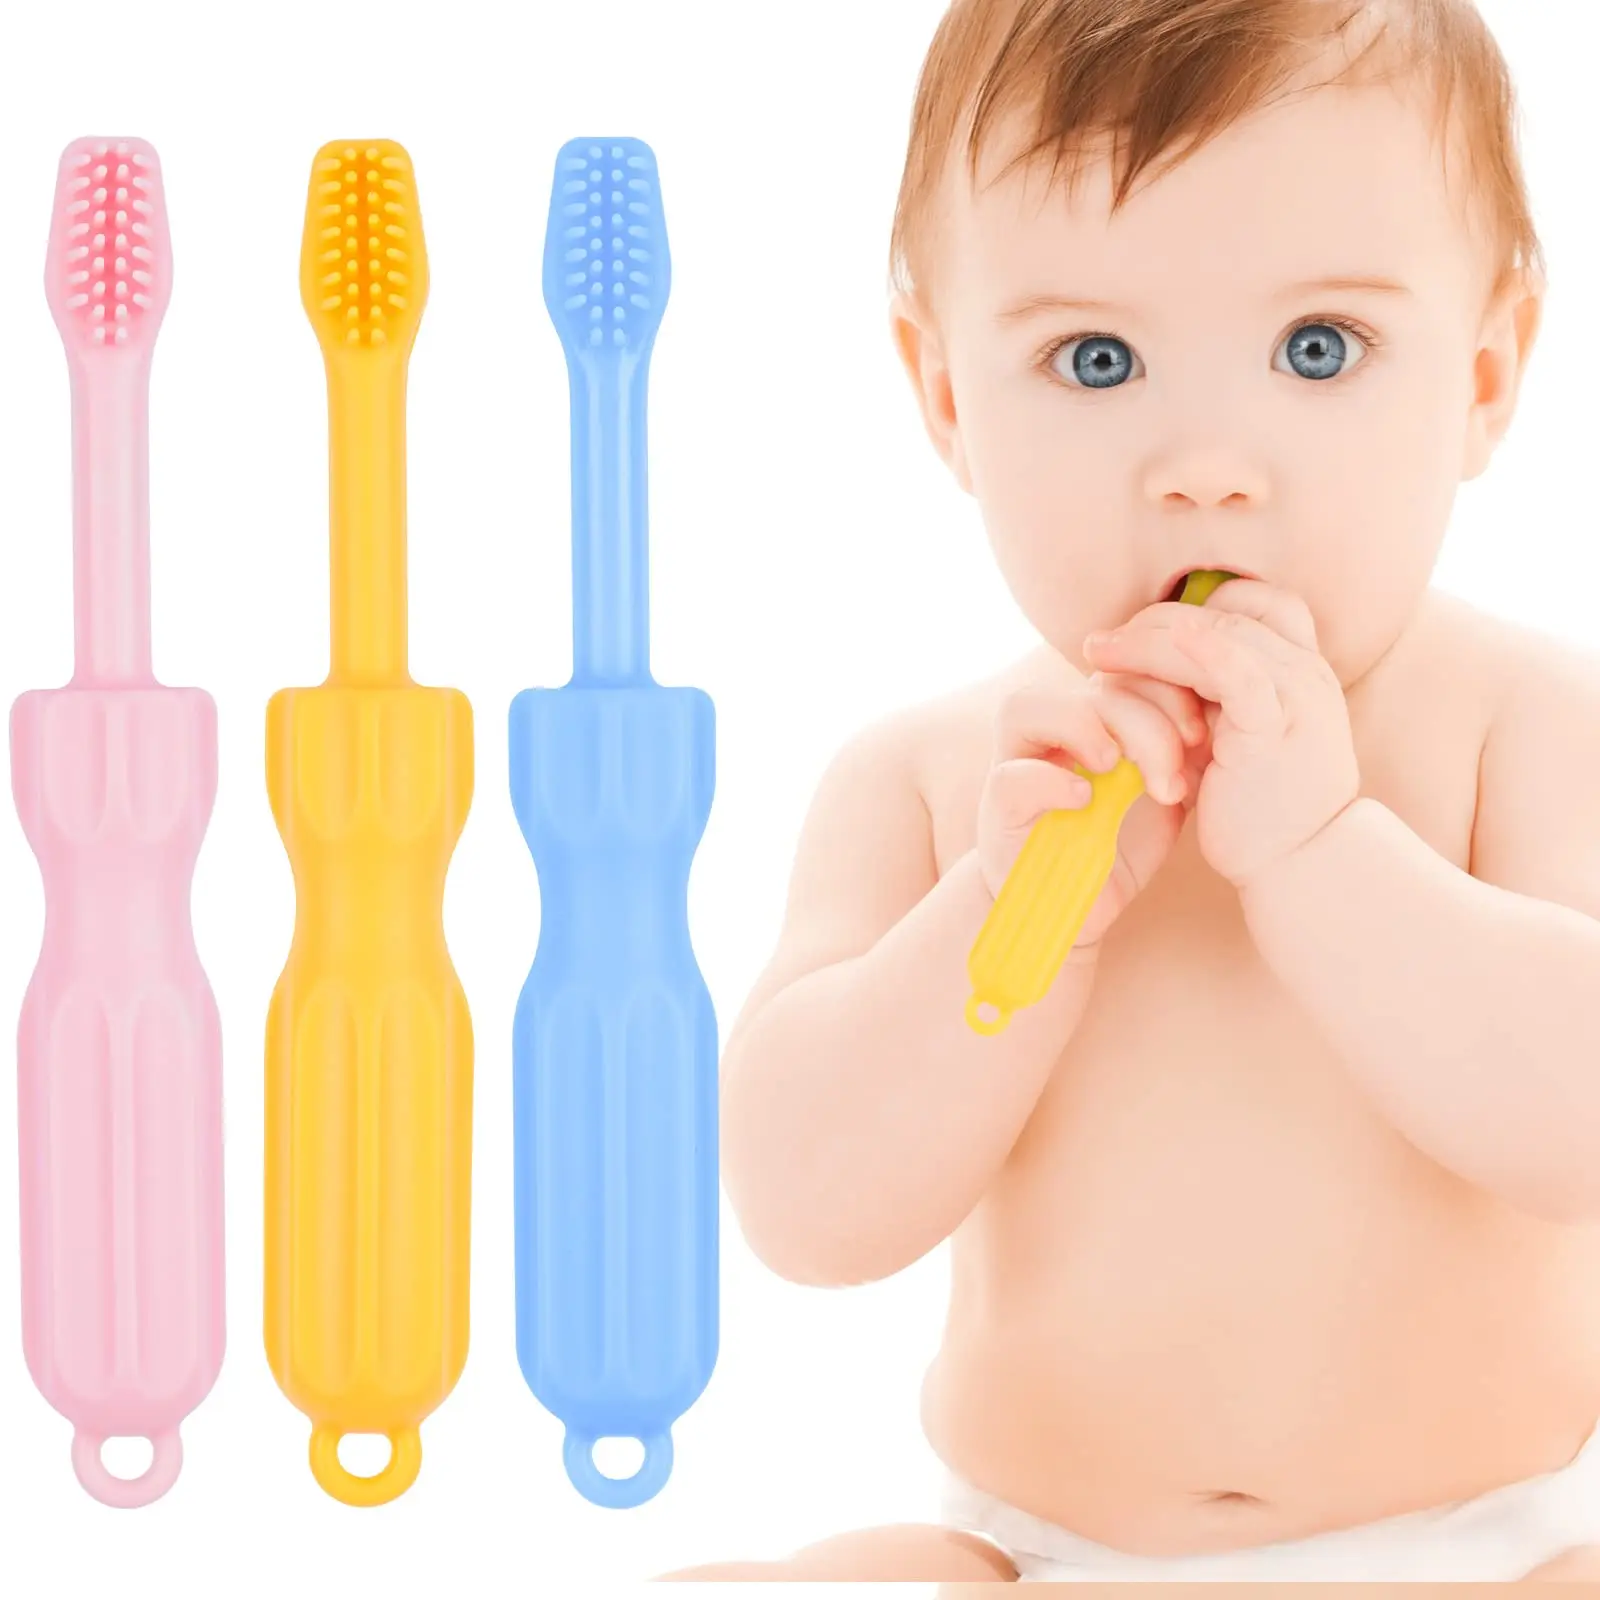 cepillo de dientes para bebes de 6 meses - Cómo lavar los dientes a un bebé de 6 meses